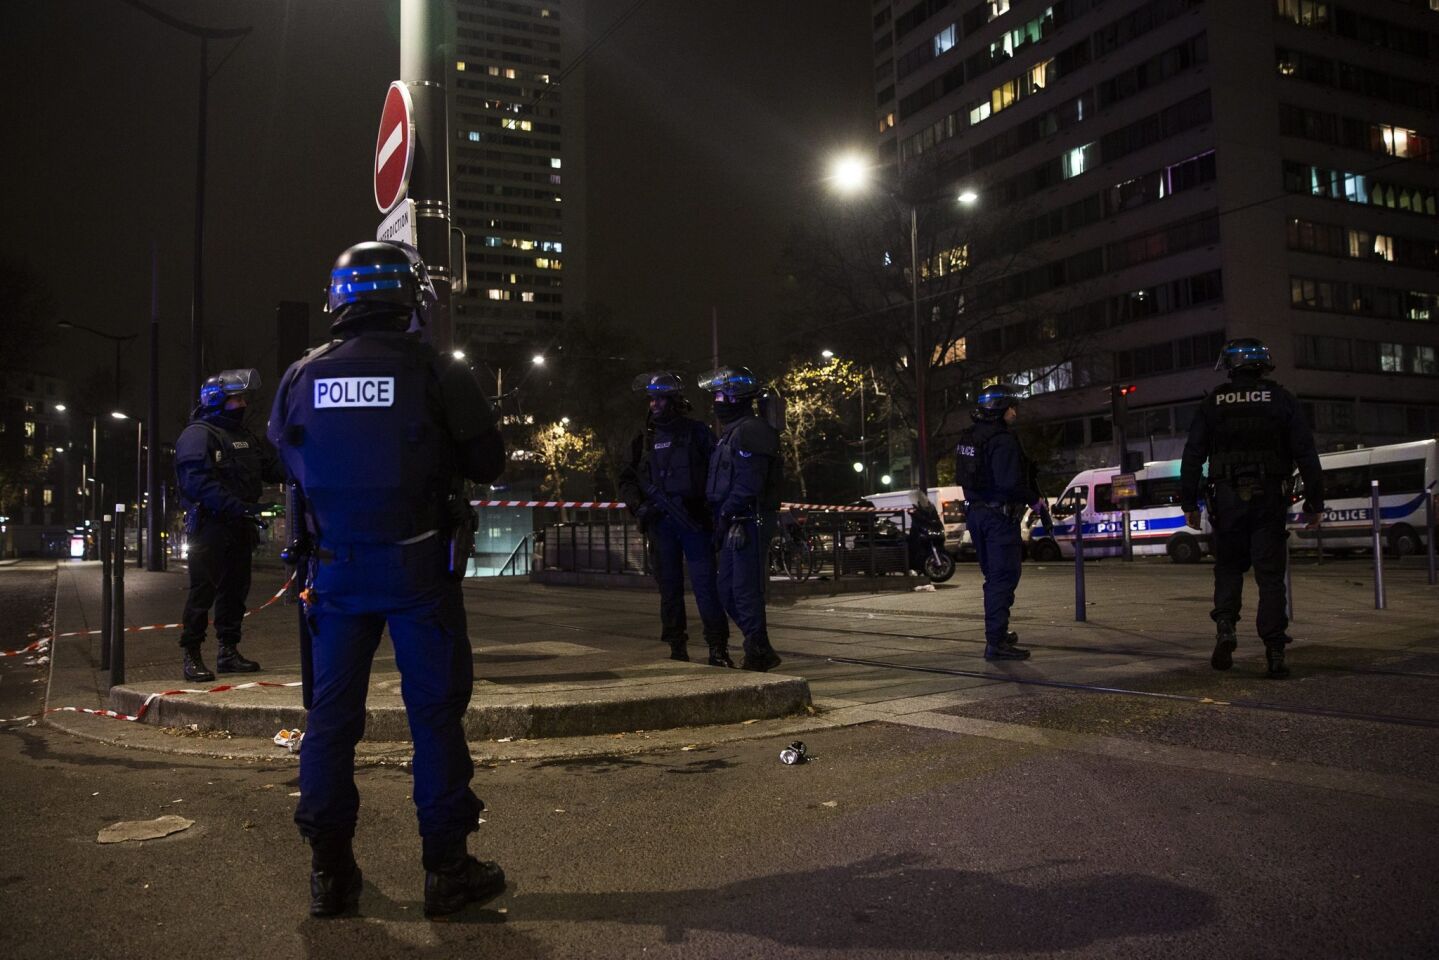 Los siete rehenes que había tomado un hombre armado en una agencia de viajes el viernes en París, salieron sanos y salvos, luego de que el asaltante se fugó antes de la intervención policial, indicaron fuentes de la policía francesa.